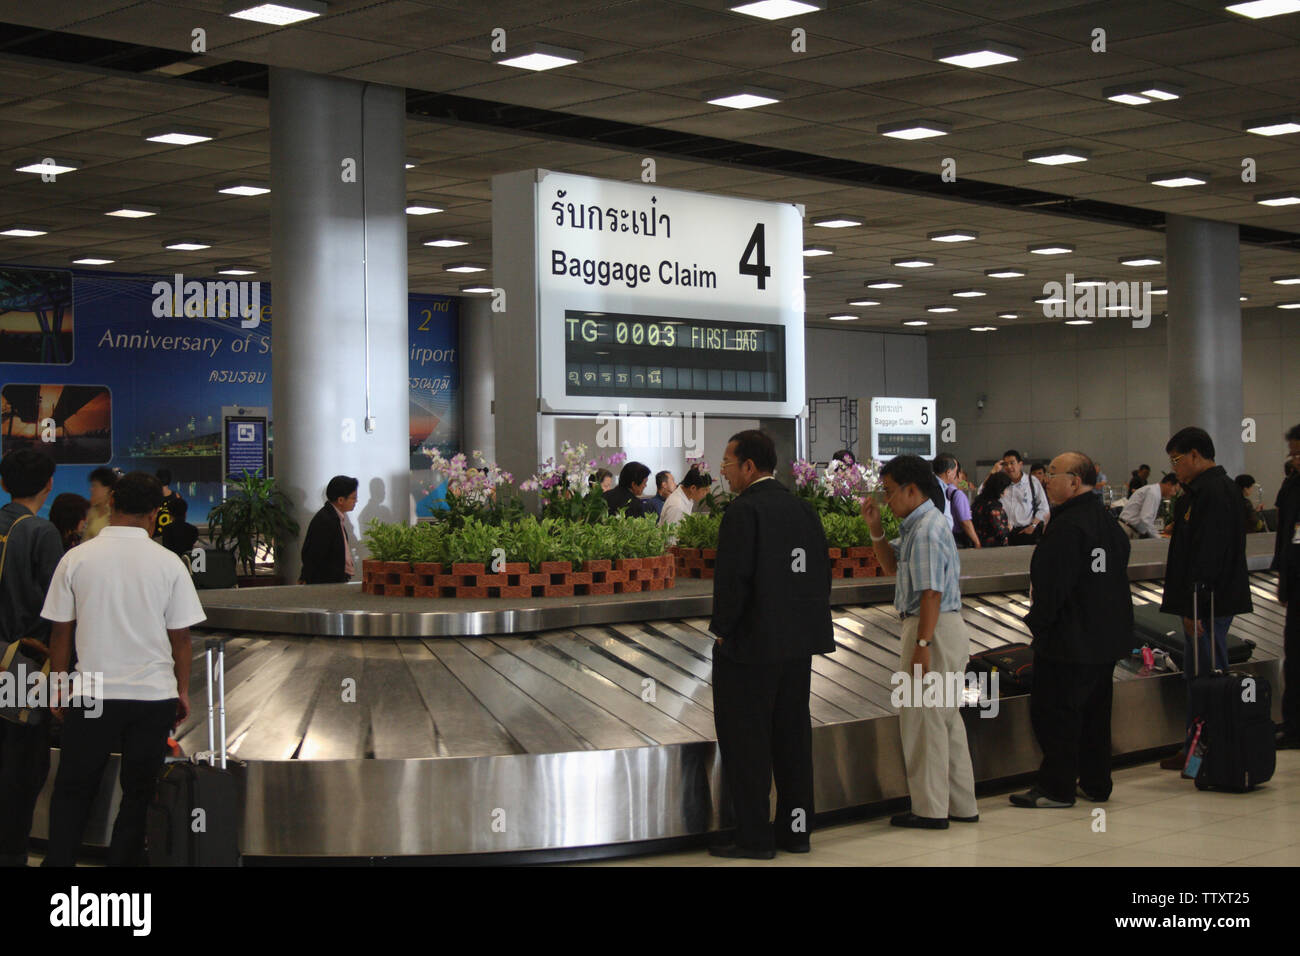 Passagers en attente de bagages dans un carrousel d'aéroport, aéroport de Suvarnabhumi, Bangkok, Thaïlande Banque D'Images